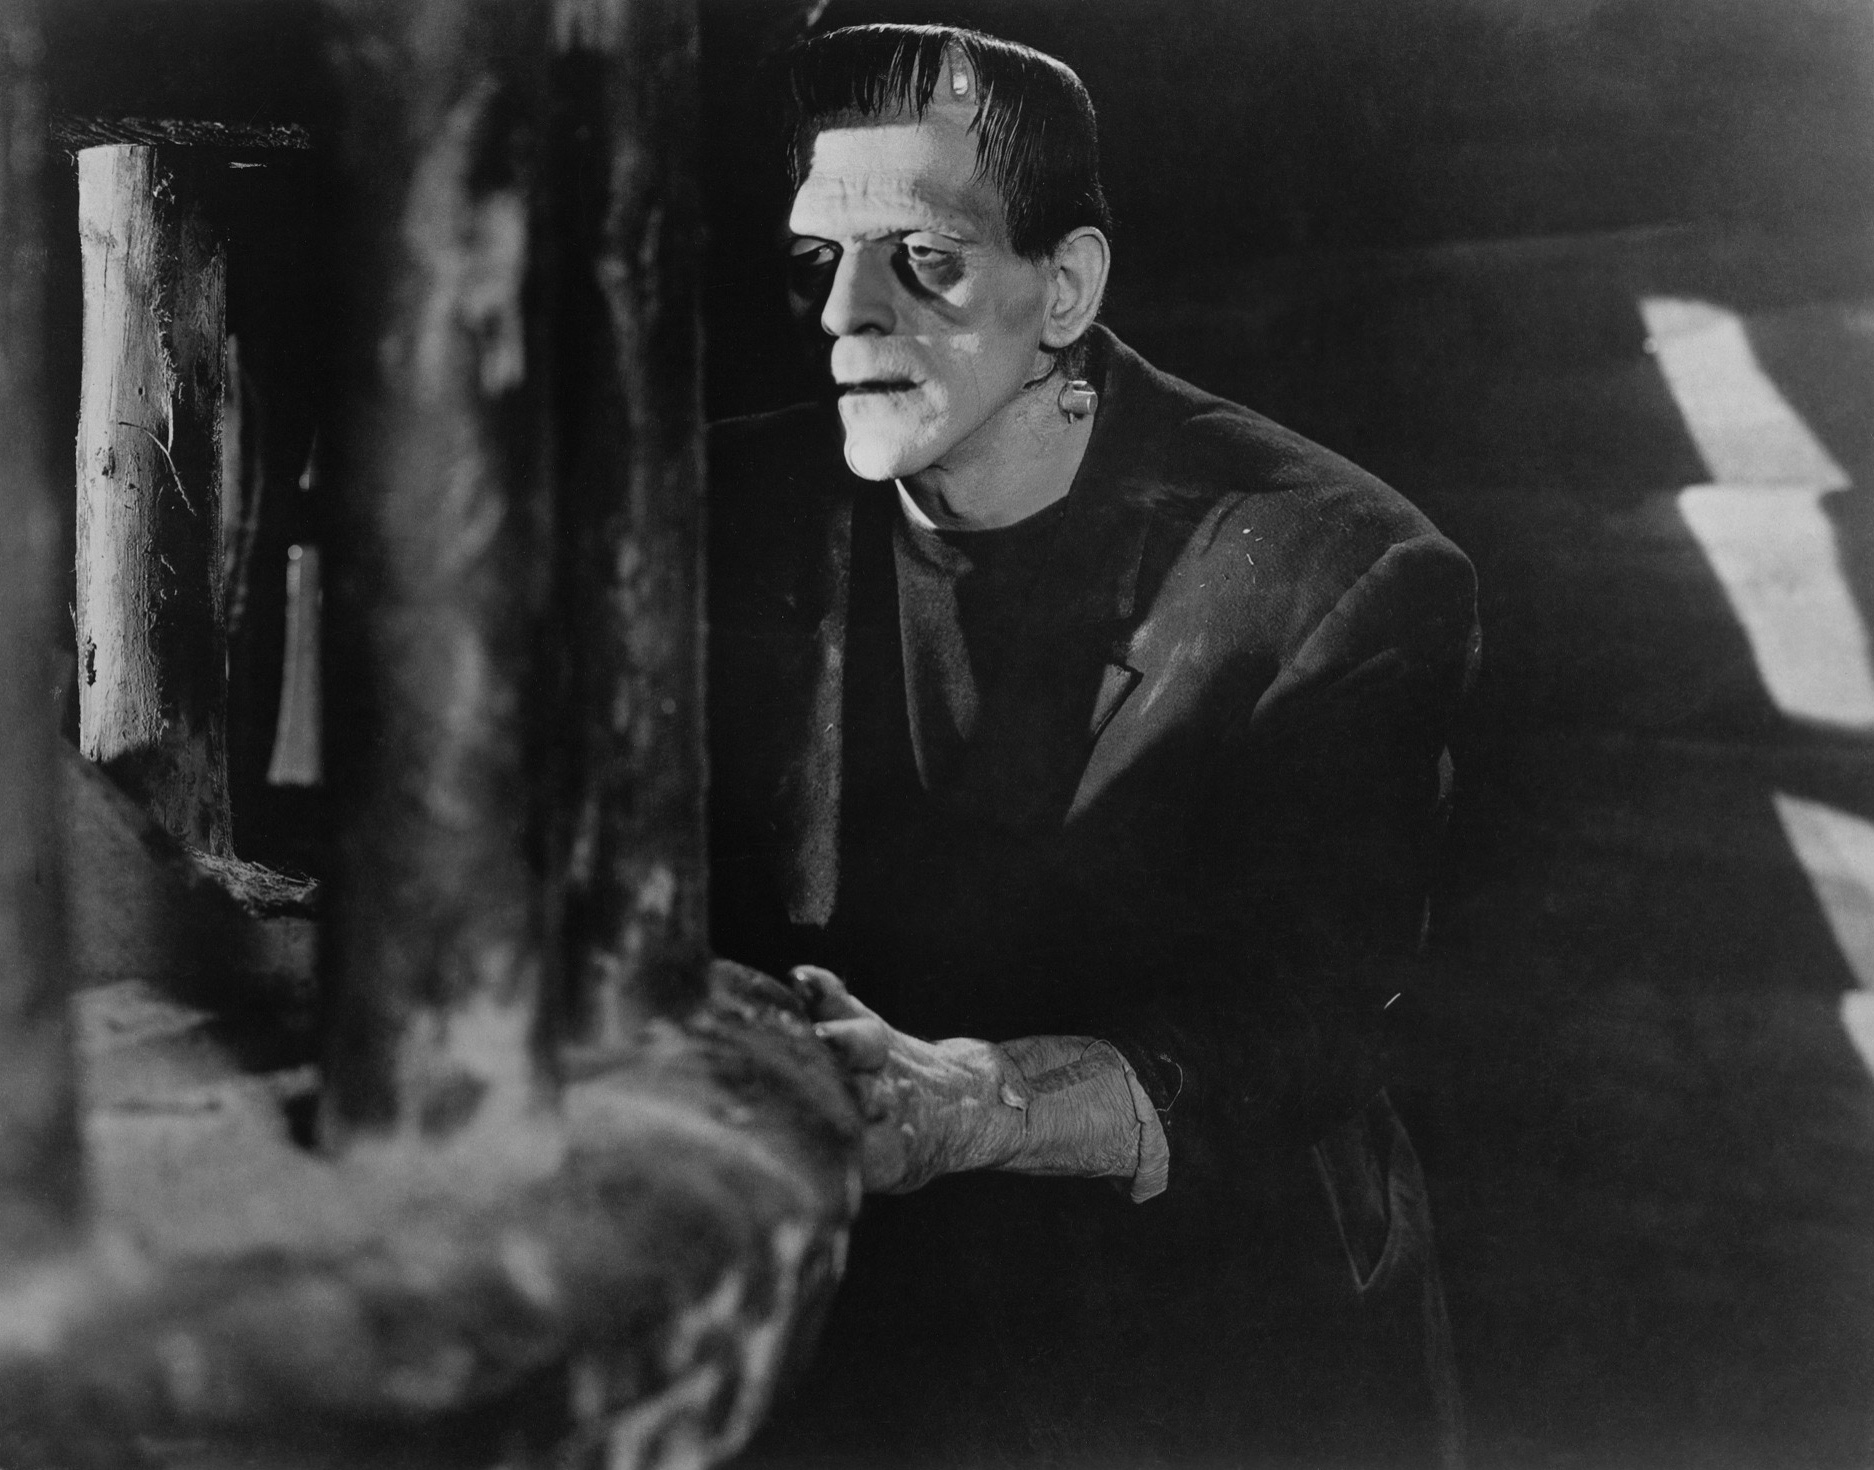 "Frankenstein" - klatki z filmu znaleziono w Watykanie